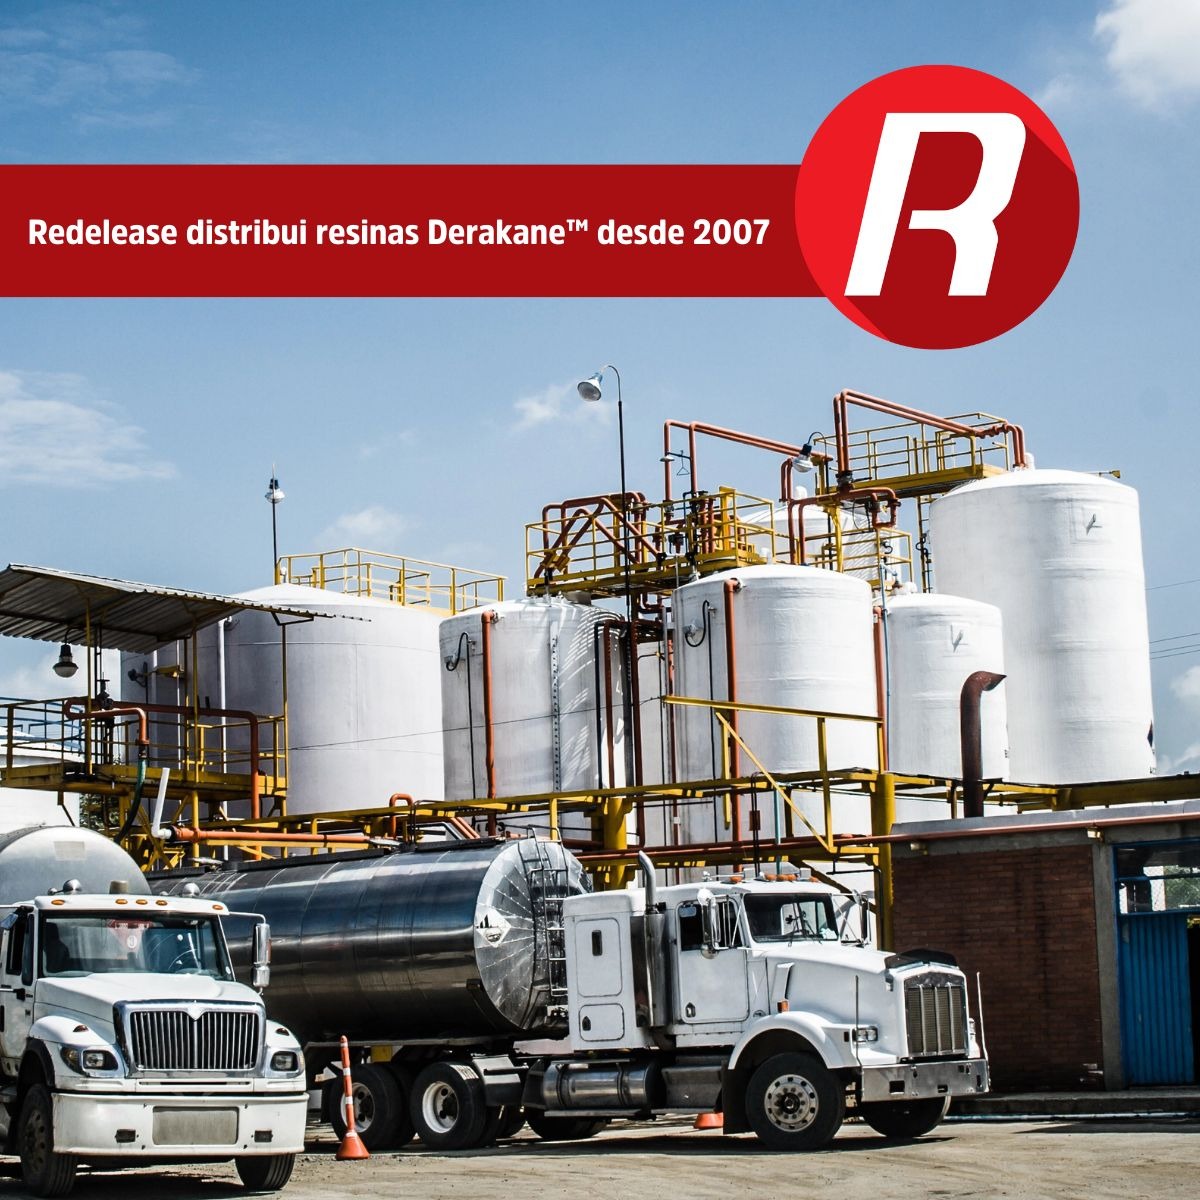 Desde 2007, a Redelease é distribuidora exclusiva das resinas éster-vinílicas Derakane™ no estado de São Paulo.